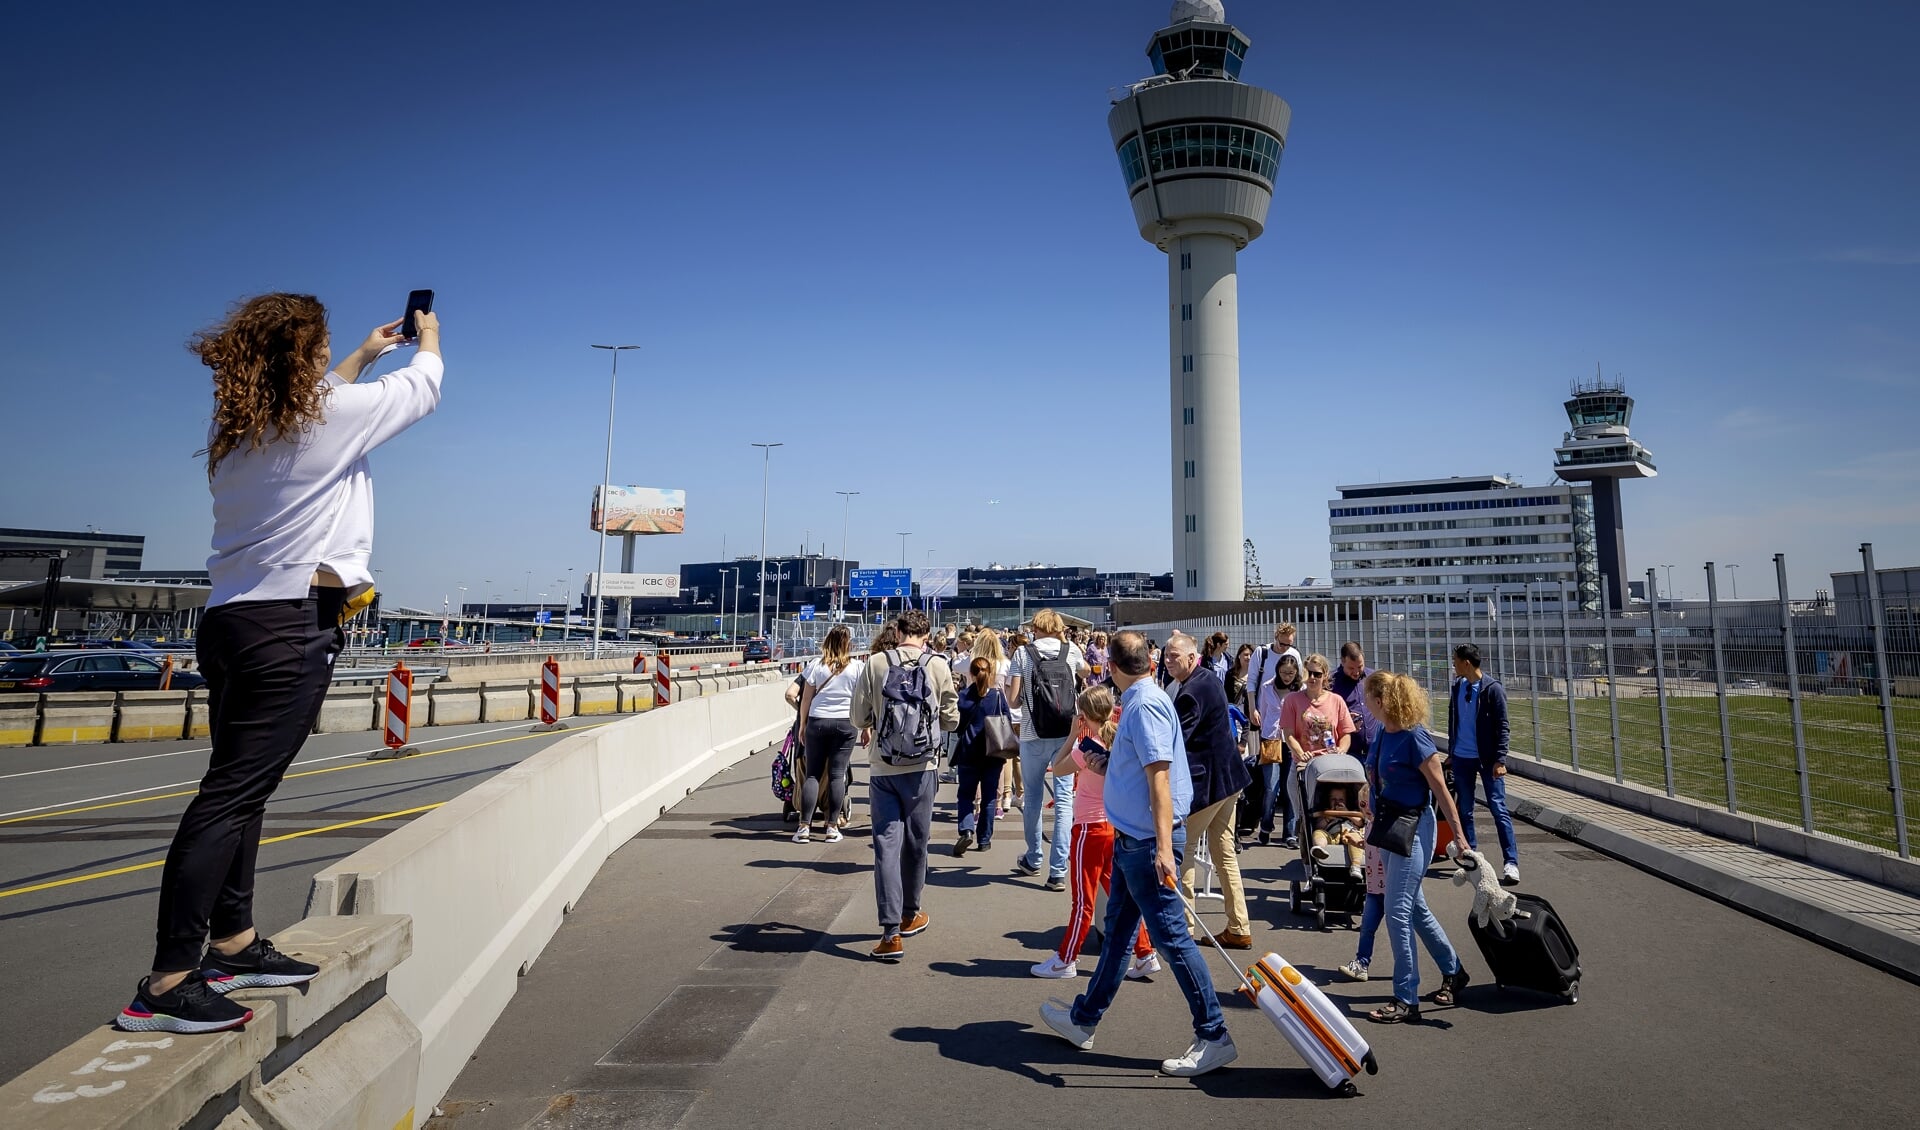 Reizigers wachten in lange rijen buiten op Schiphol. Zij mogen alleen de vertrekhallen in als hun vlucht binnen vier uur vertrekt. Afgelopen weken ontstond drukte op Schiphol; veel vakantiegangers en weinig personeel.